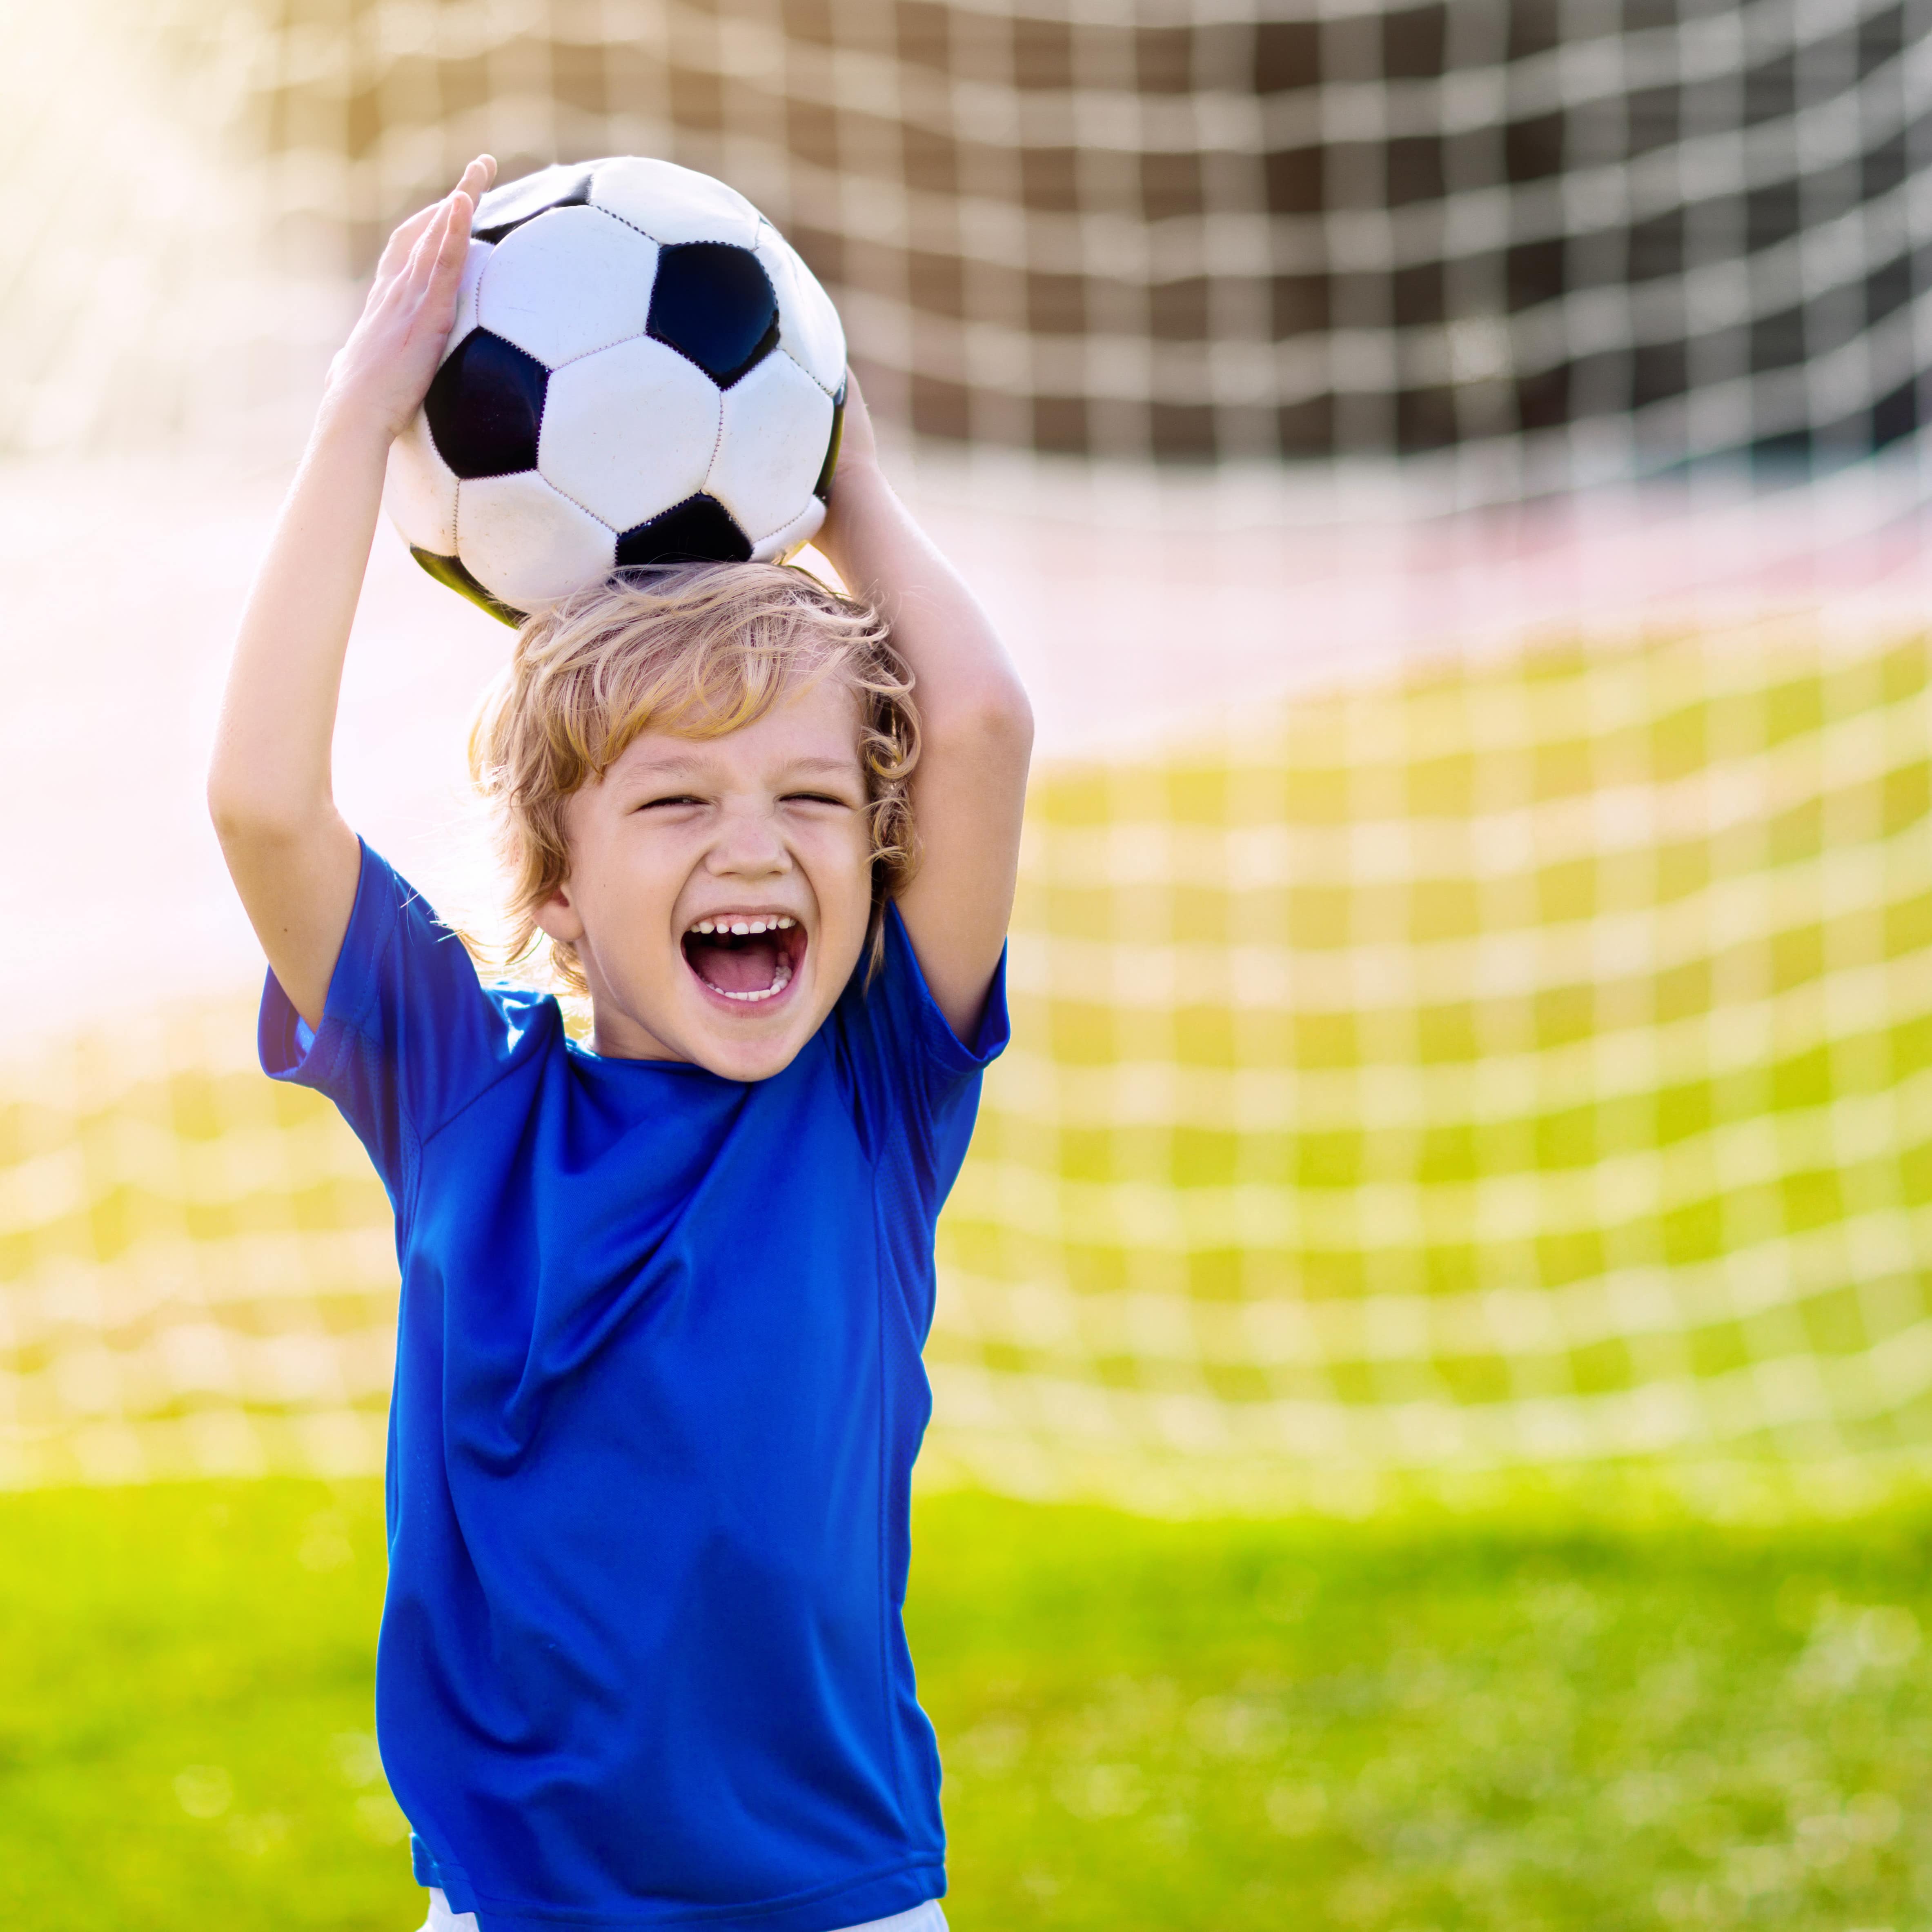 Ein kleiner Junge in blauem T-Shirt vor einem Fußballtor hält lachend einen Ball über dem Kopf.